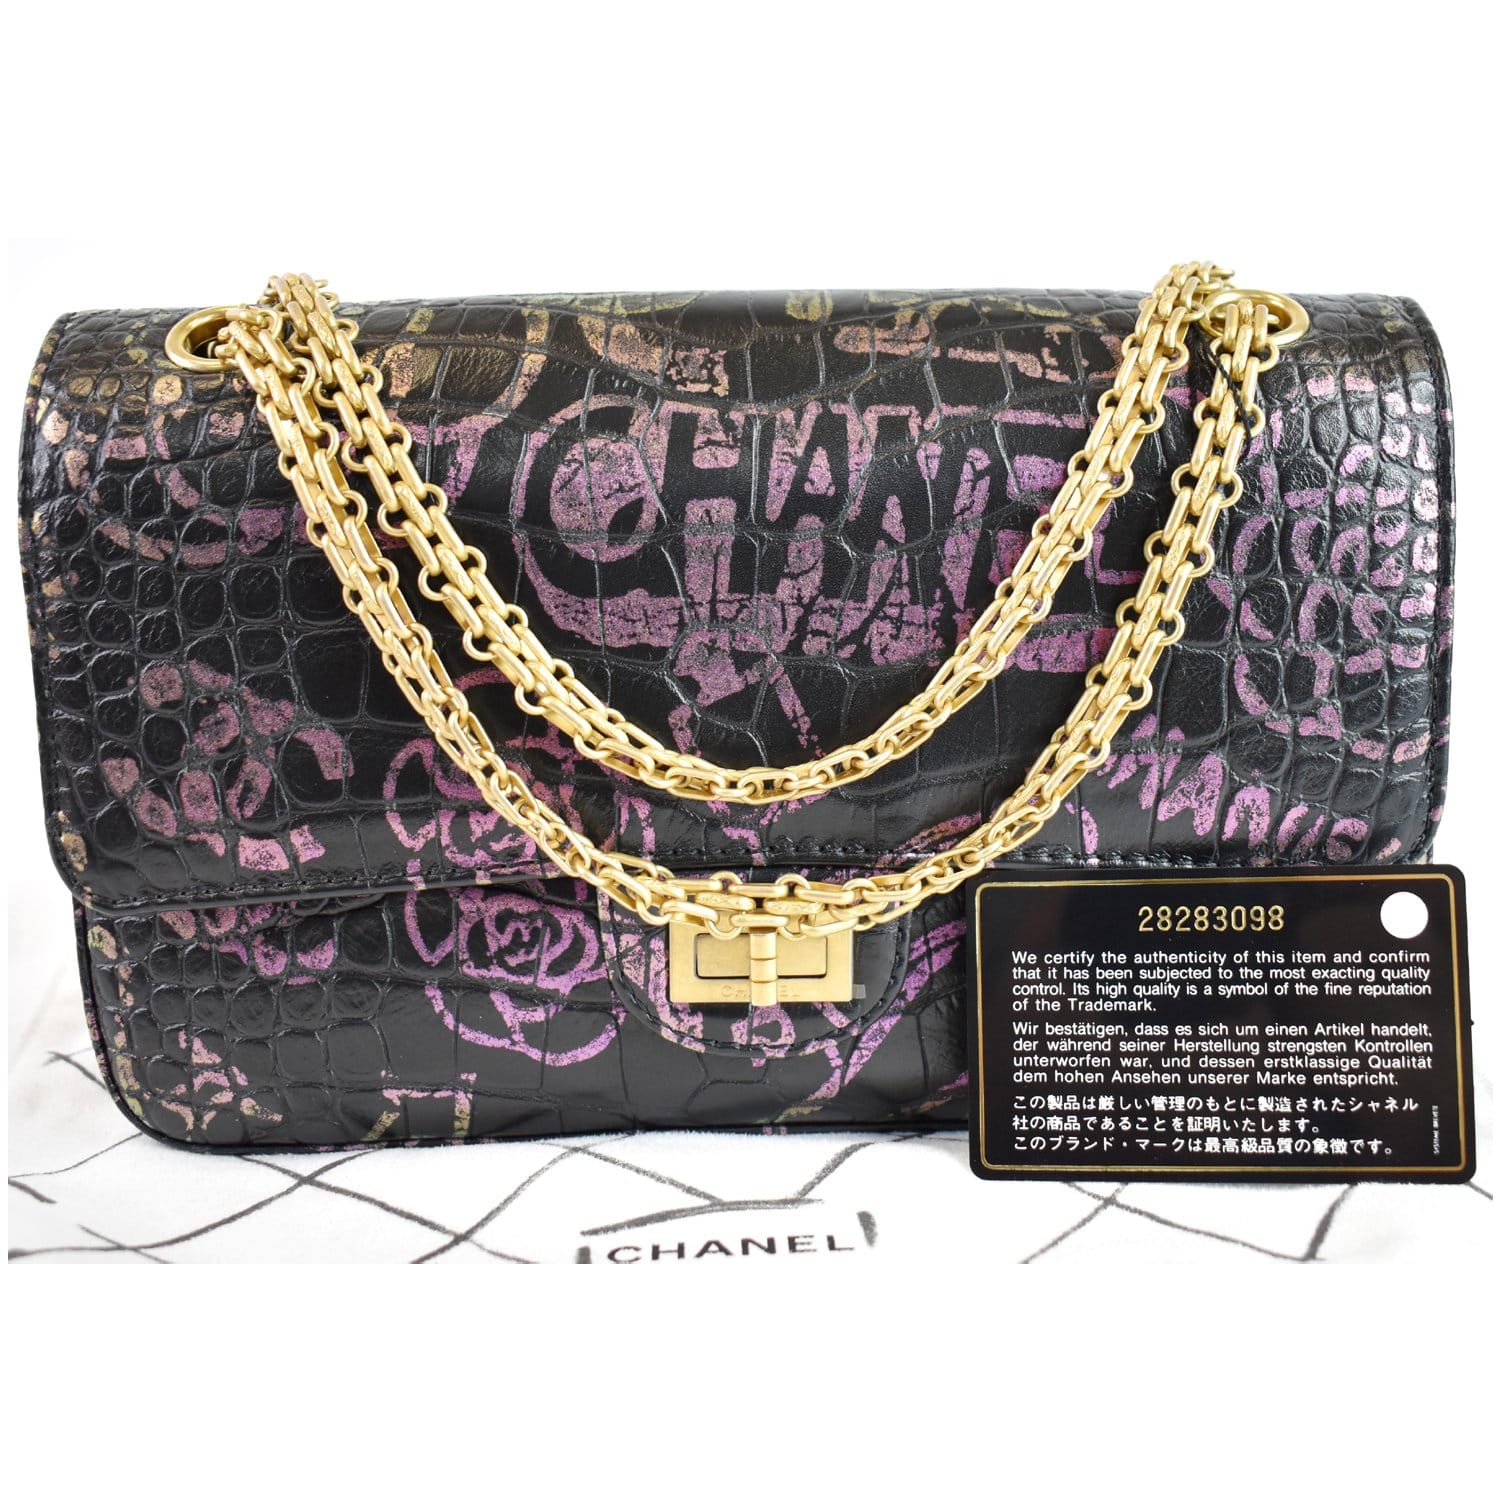 Chanel Black Crocodile Stitch Satin Reissue 2.55 227 Double Flap Bag, myGemma, SG